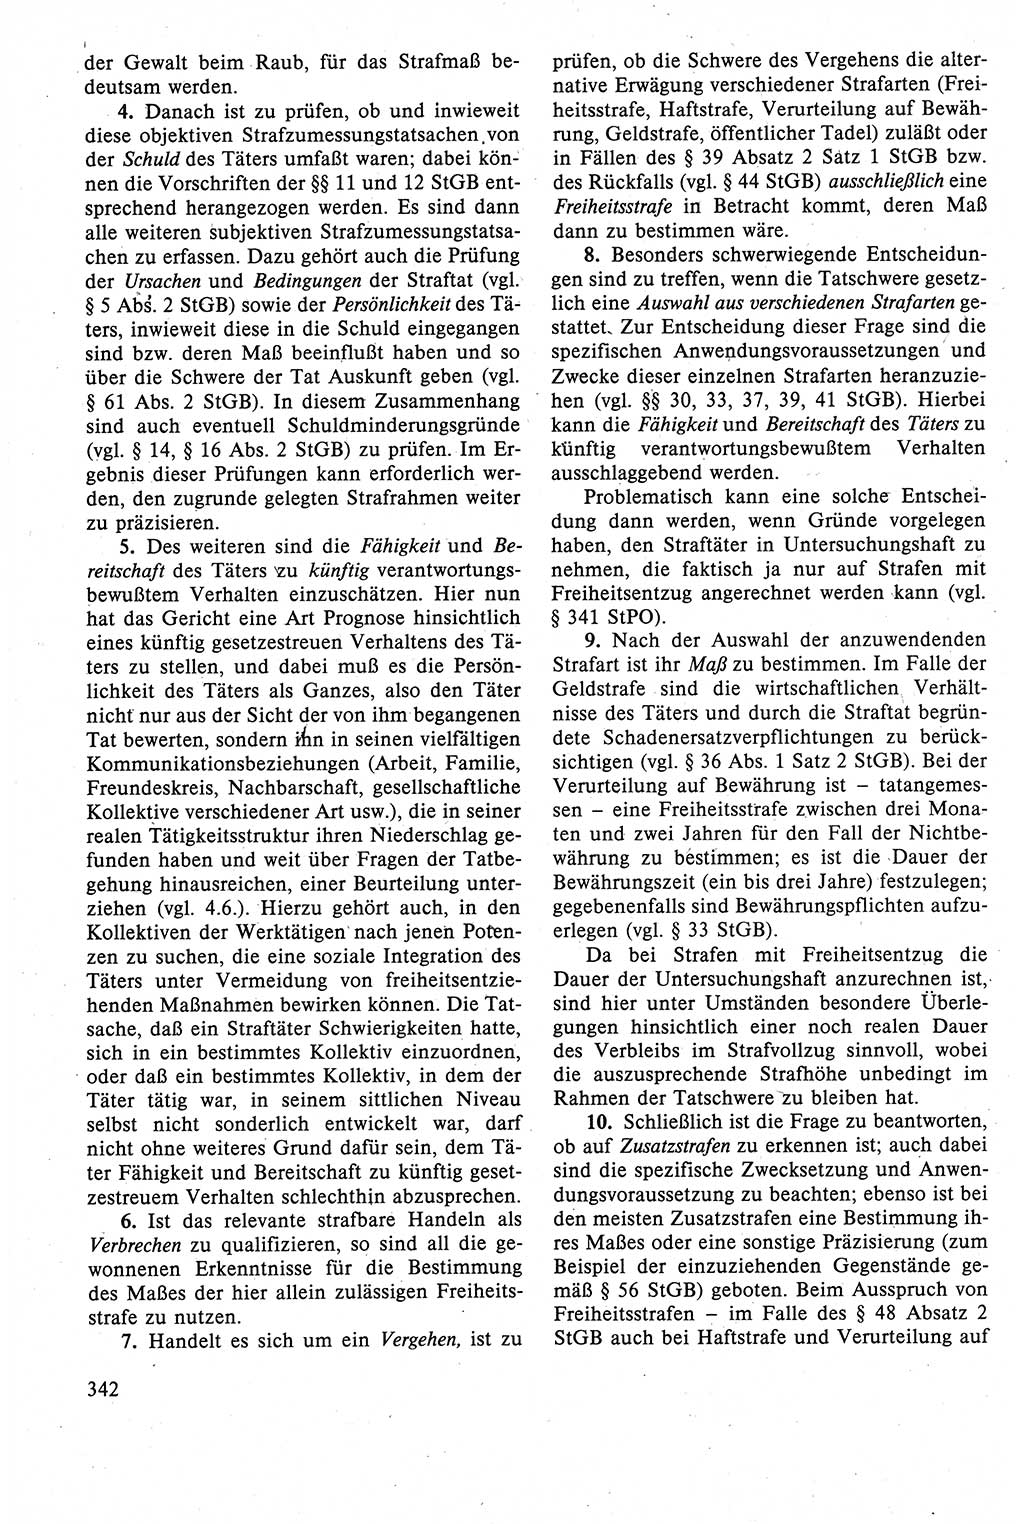 Strafrecht der DDR (Deutsche Demokratische Republik), Lehrbuch 1988, Seite 342 (Strafr. DDR Lb. 1988, S. 342)